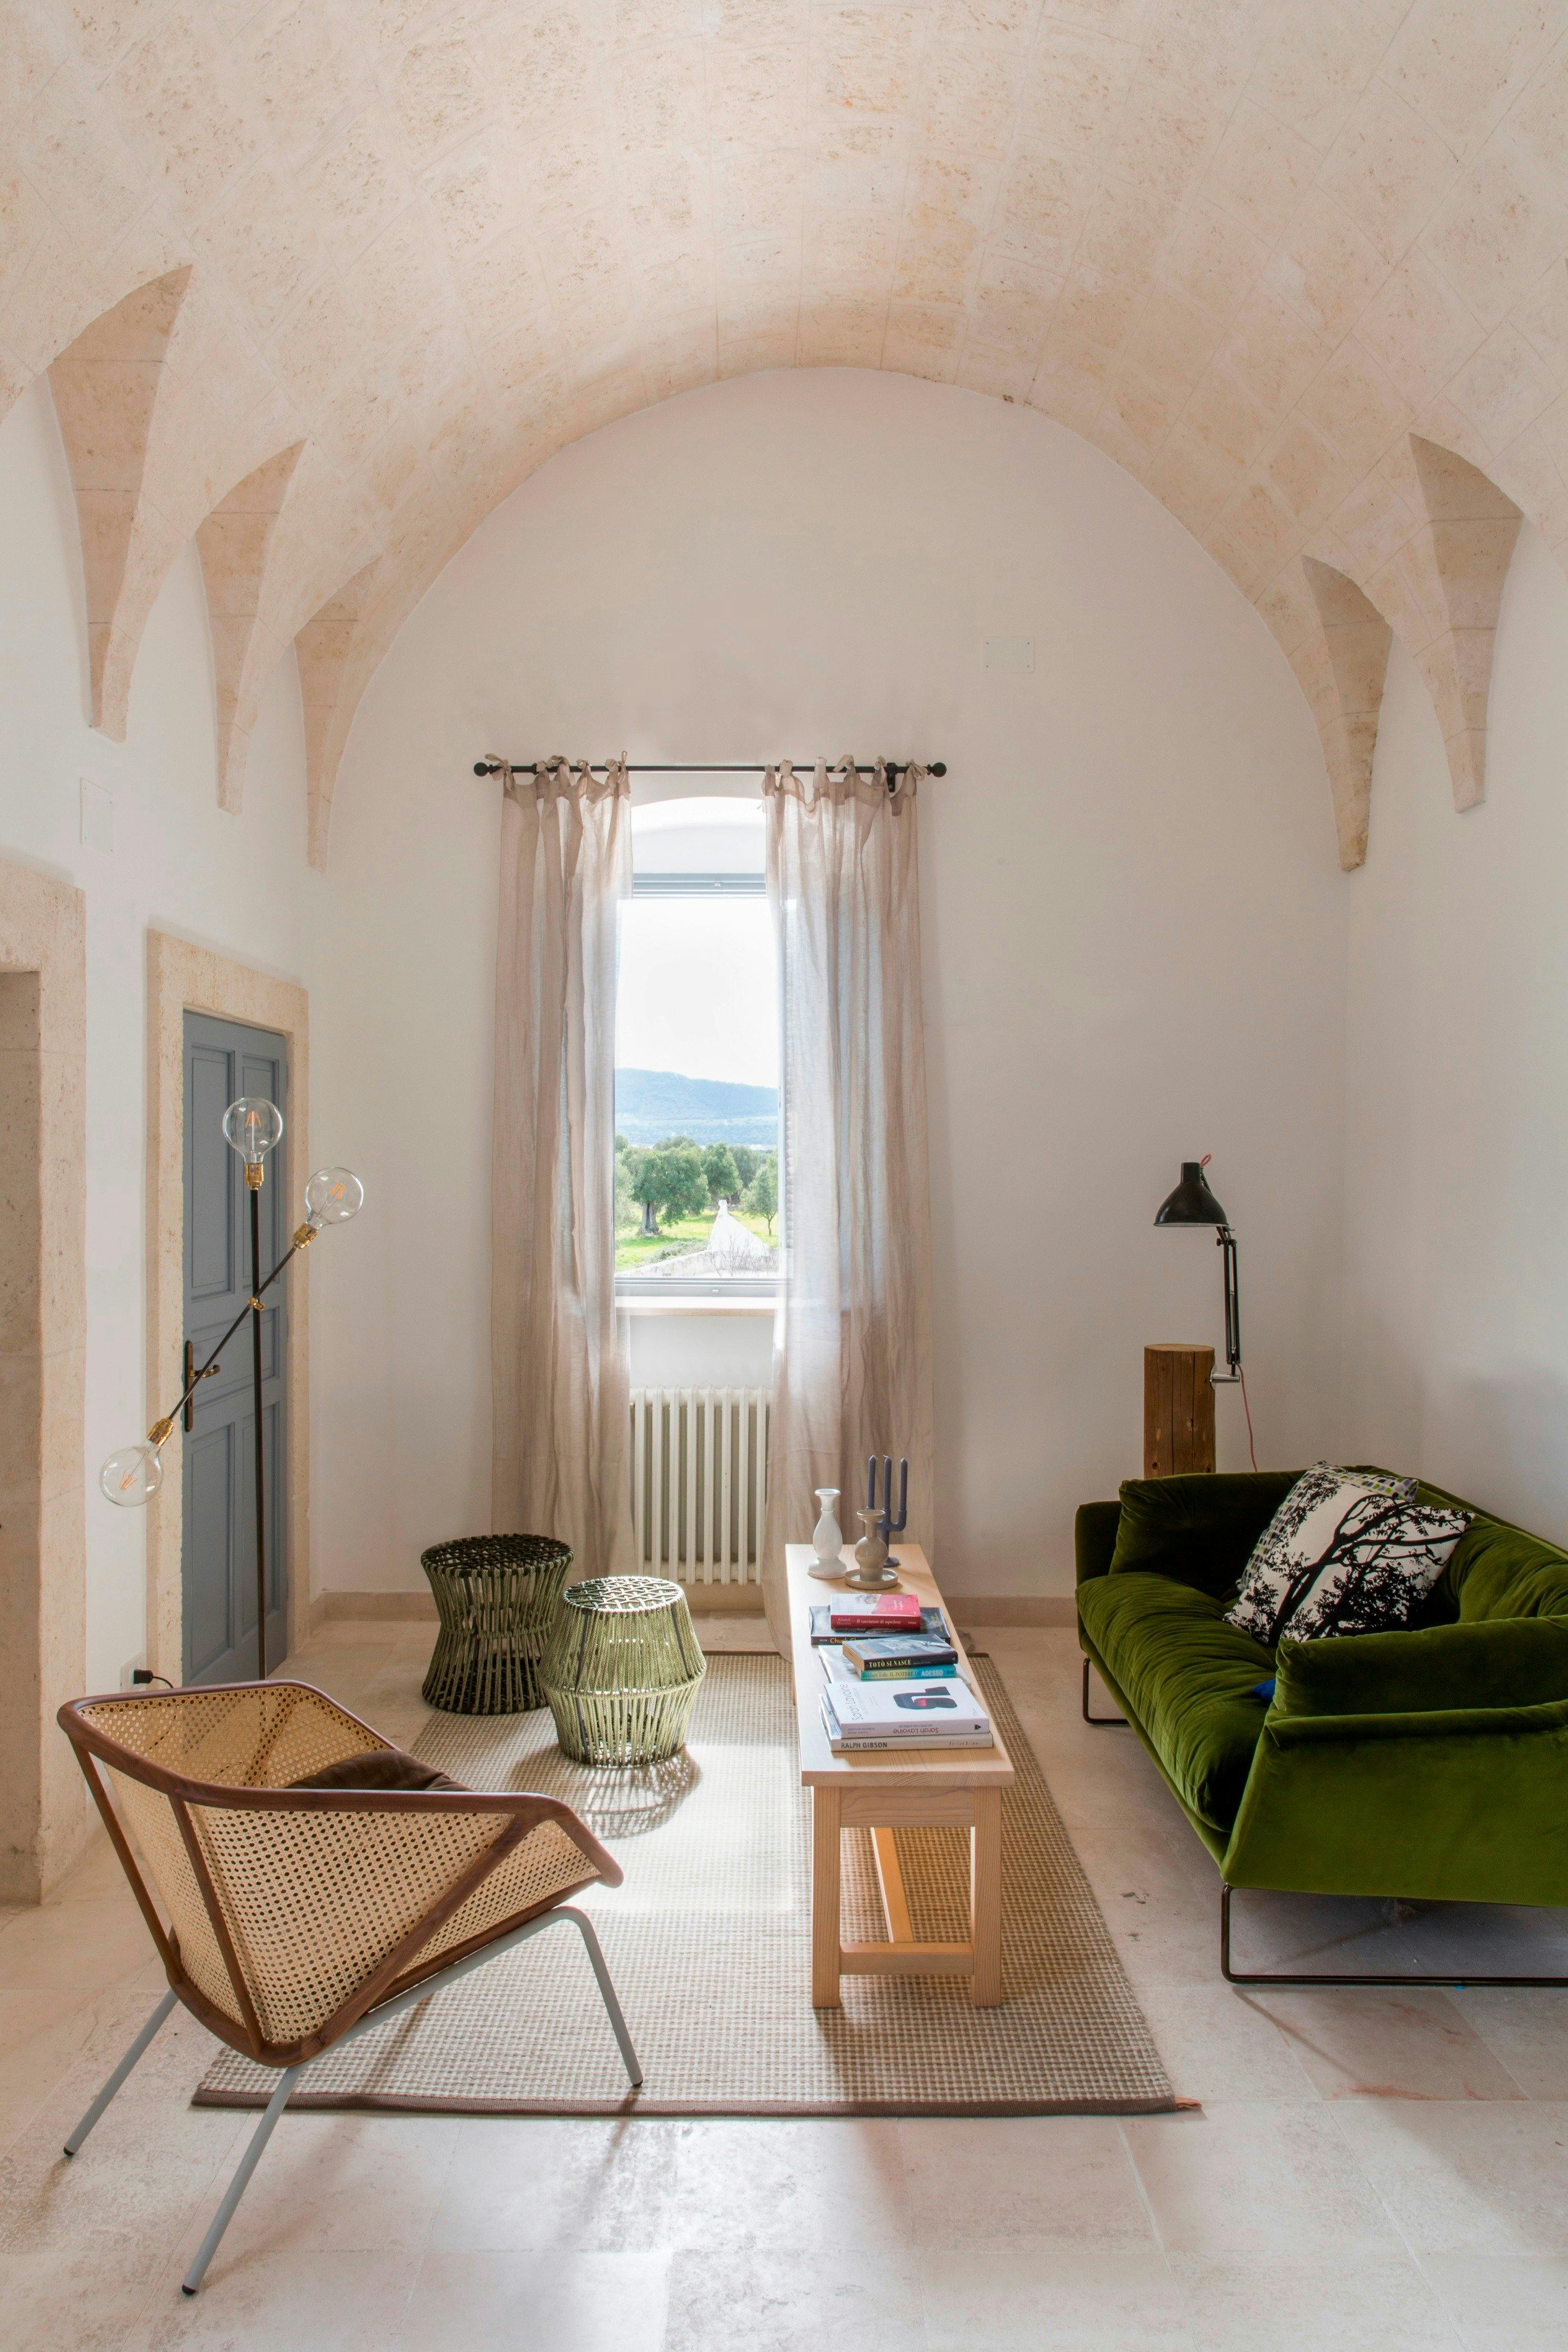 Trần nhà hình vòm kiểu Ý này ở Masseria San Giovanni từ các nhà lưu trữ đẹp đến mức nào?  Không gian này thực chất là một khách sạn, nên tất cả những gì tôi thực sự cần biết là...khi nào nhận phòng???  #vòm #xu hướng thiết kế #nội thất #hữu cơhiện đại #phòng khách